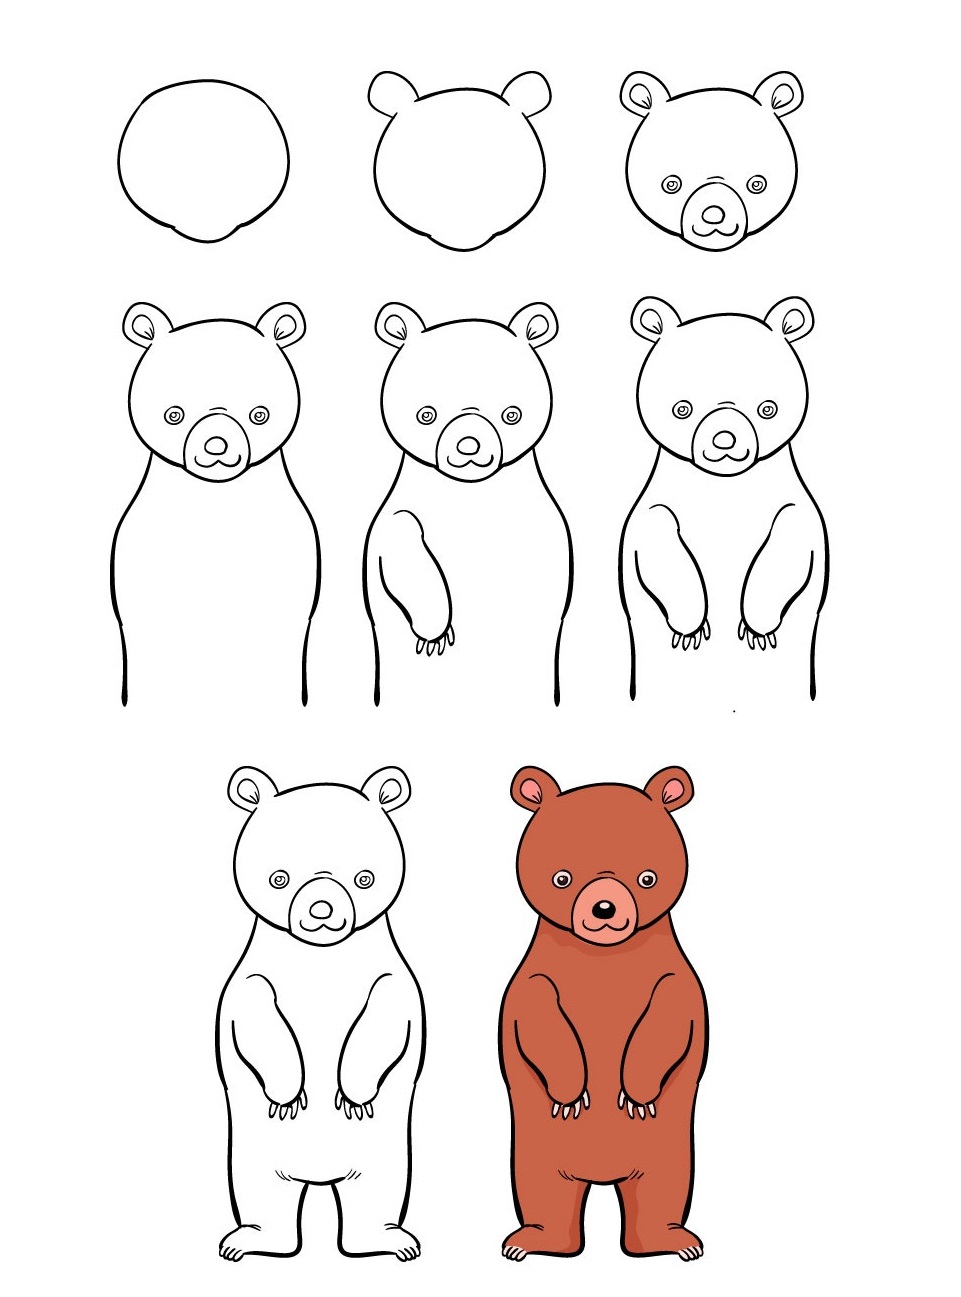 Xem hơn 100 ảnh về hình vẽ gấu dễ thương  NEC